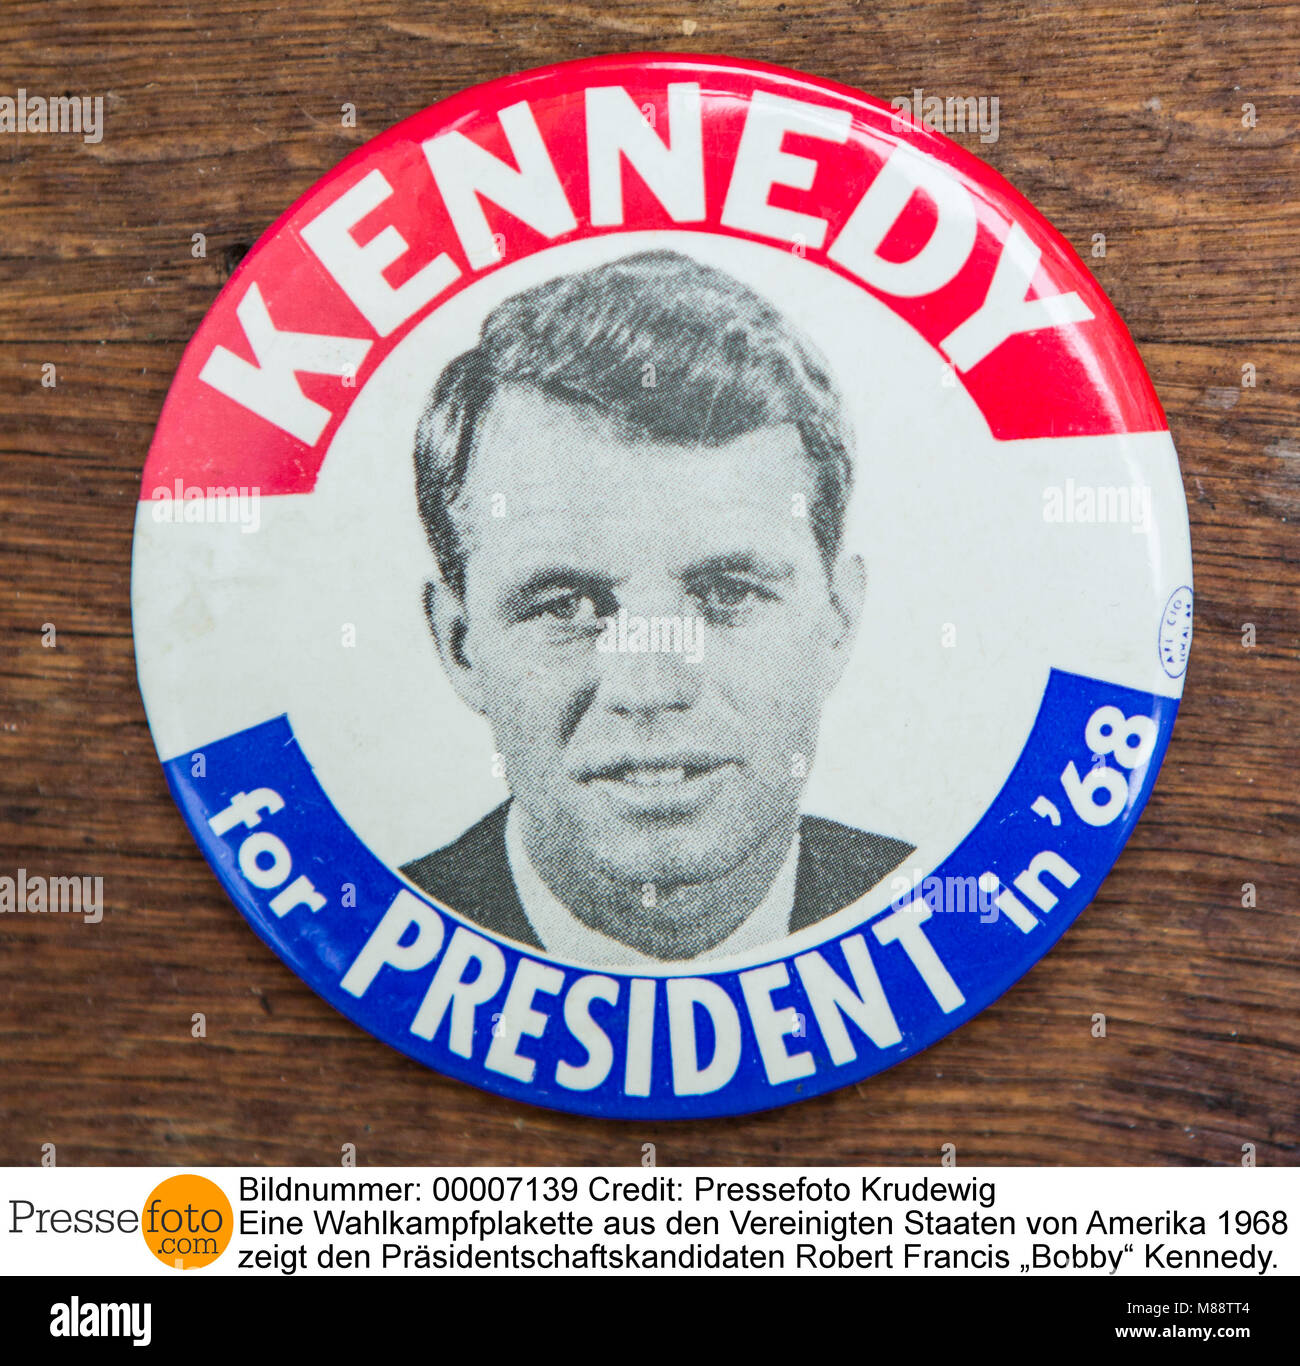 Wahlkampfplakette eine aus den Vereinigten Staaten von Amerika 1968 zeigt den Präsidentschaftskandidaten Robert Francis ?Bobby ? Kennedy. Der jüngere B Banque D'Images